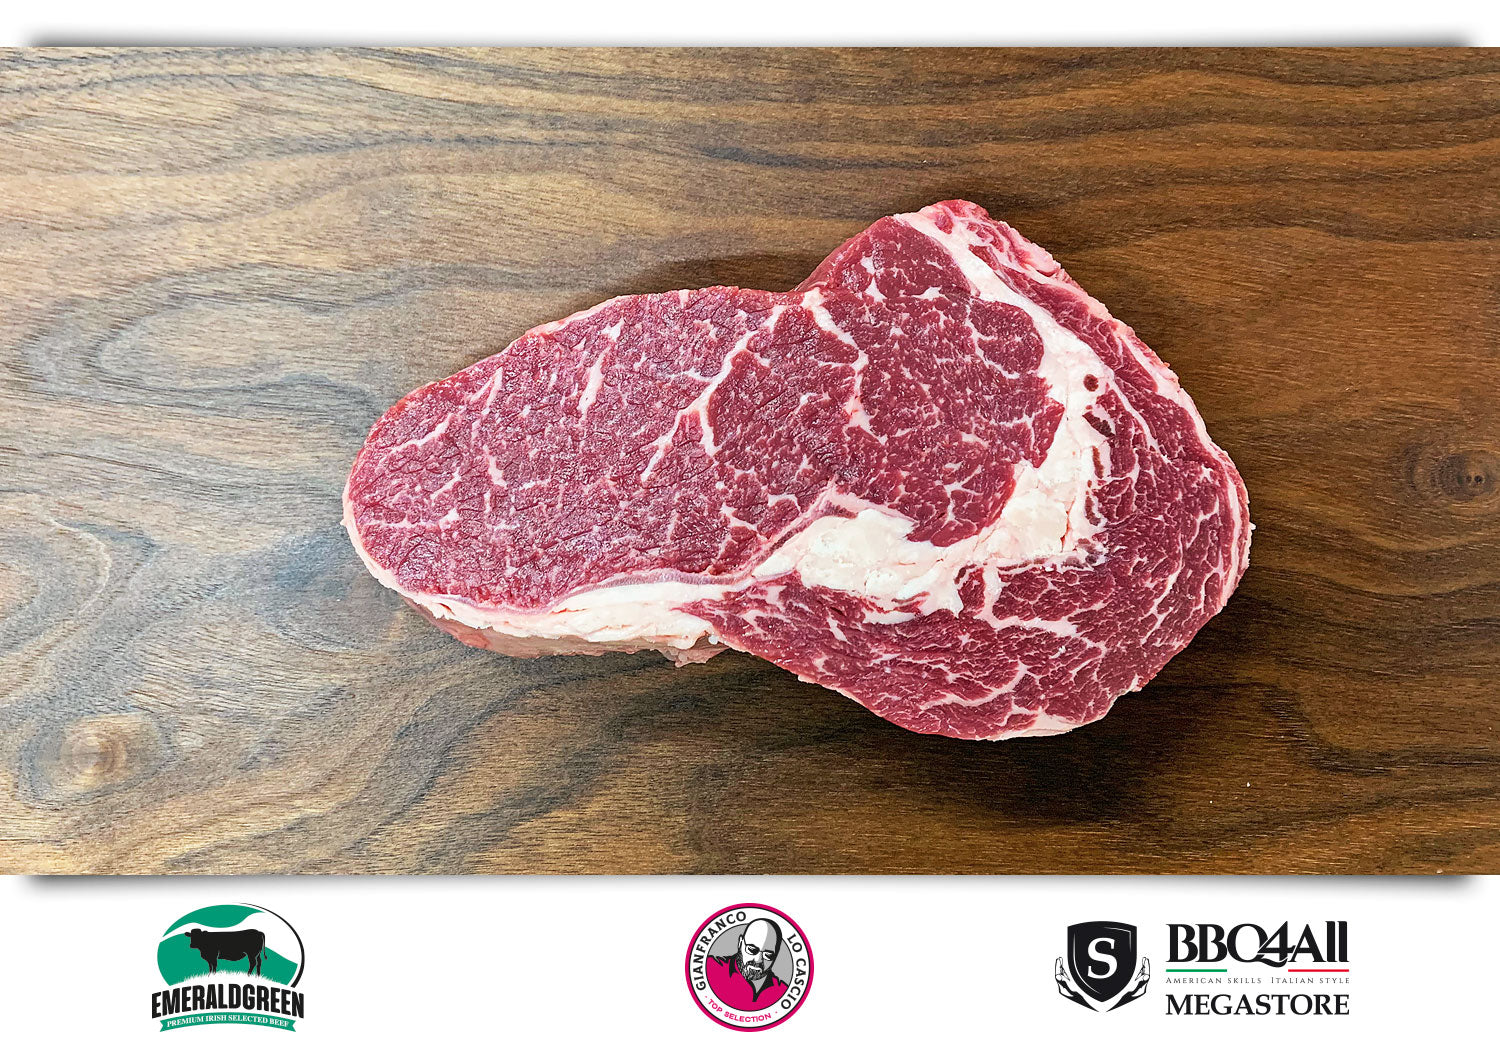 Ribeye irlandese, la bistecca ideale direttamente dalla selezione di Gianfranco Lo cascio sul Megastore di BBQ4ALL